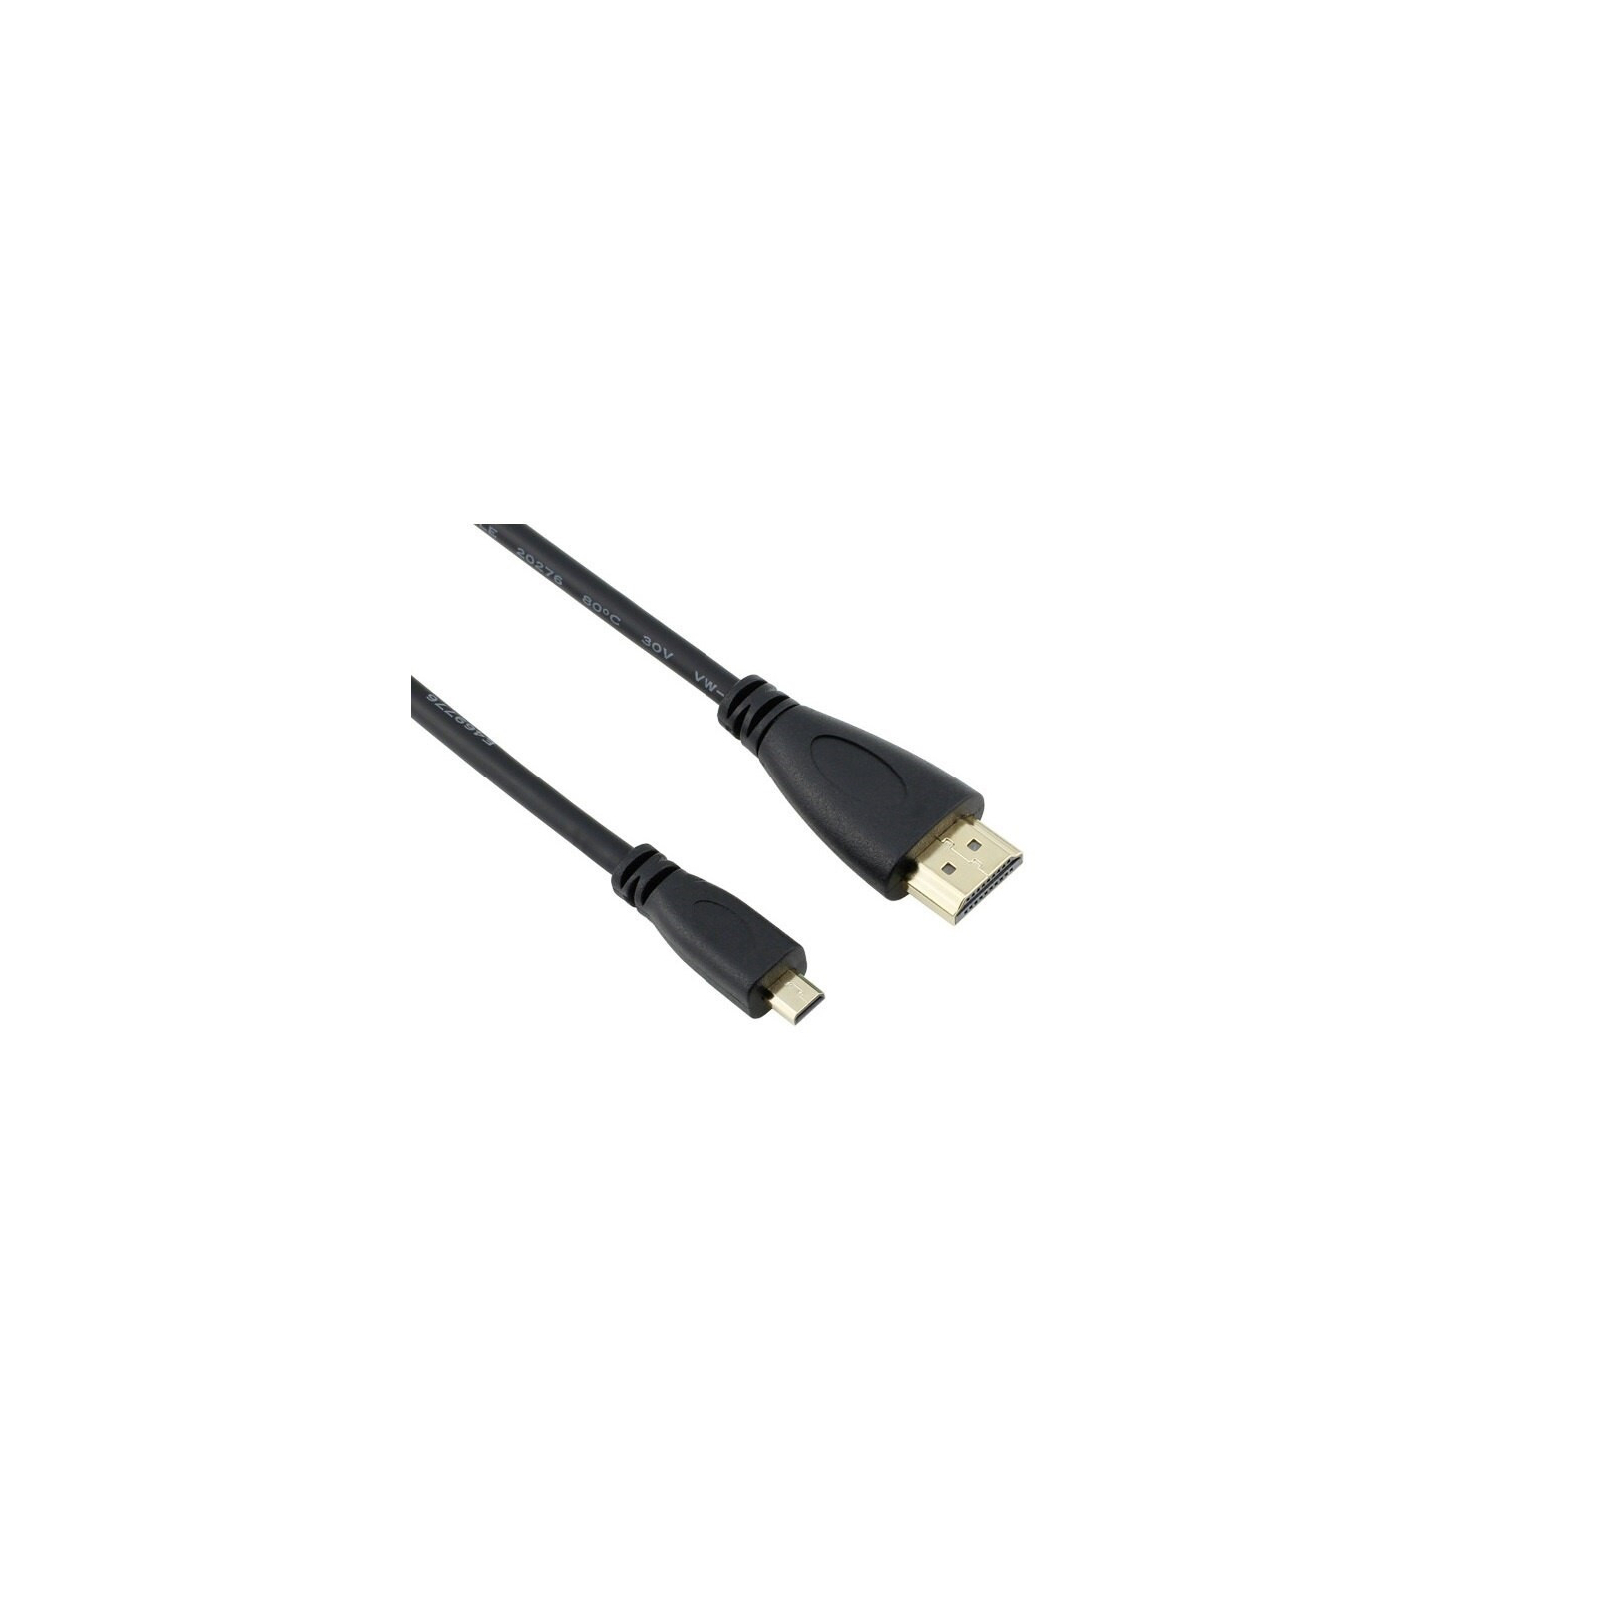 Додаткове обладнання до промислового ПК Raspberry Pi кабель Micro HDMI to HDMI for Pi 4B (RA557)